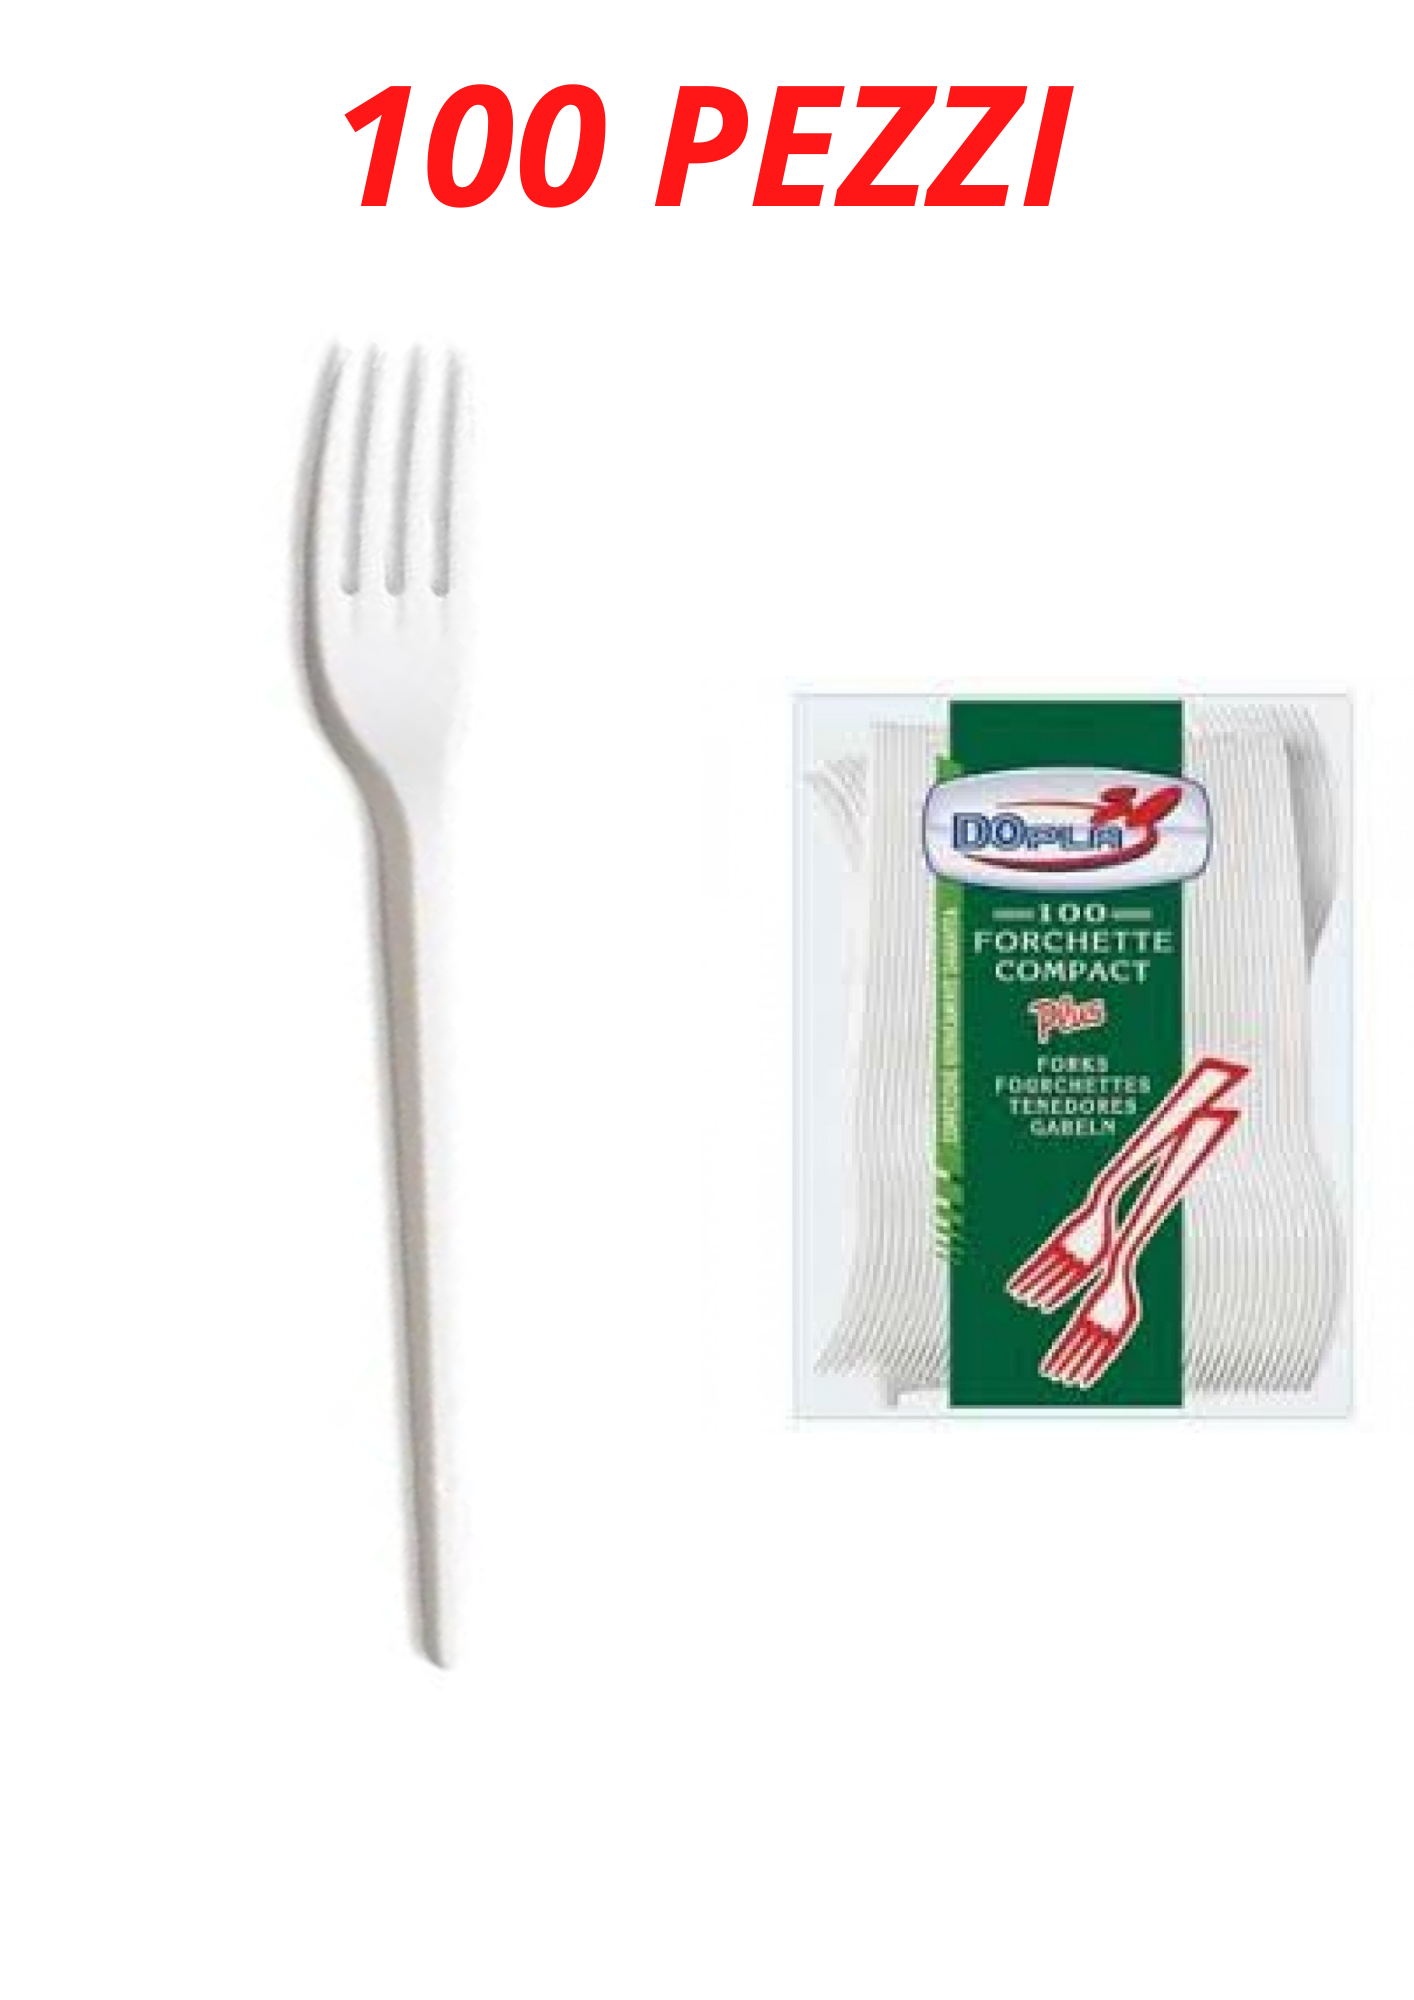 Confezione di forchette in plastica compostabili monouso Personalizzata, Prezzo Basso Garantito